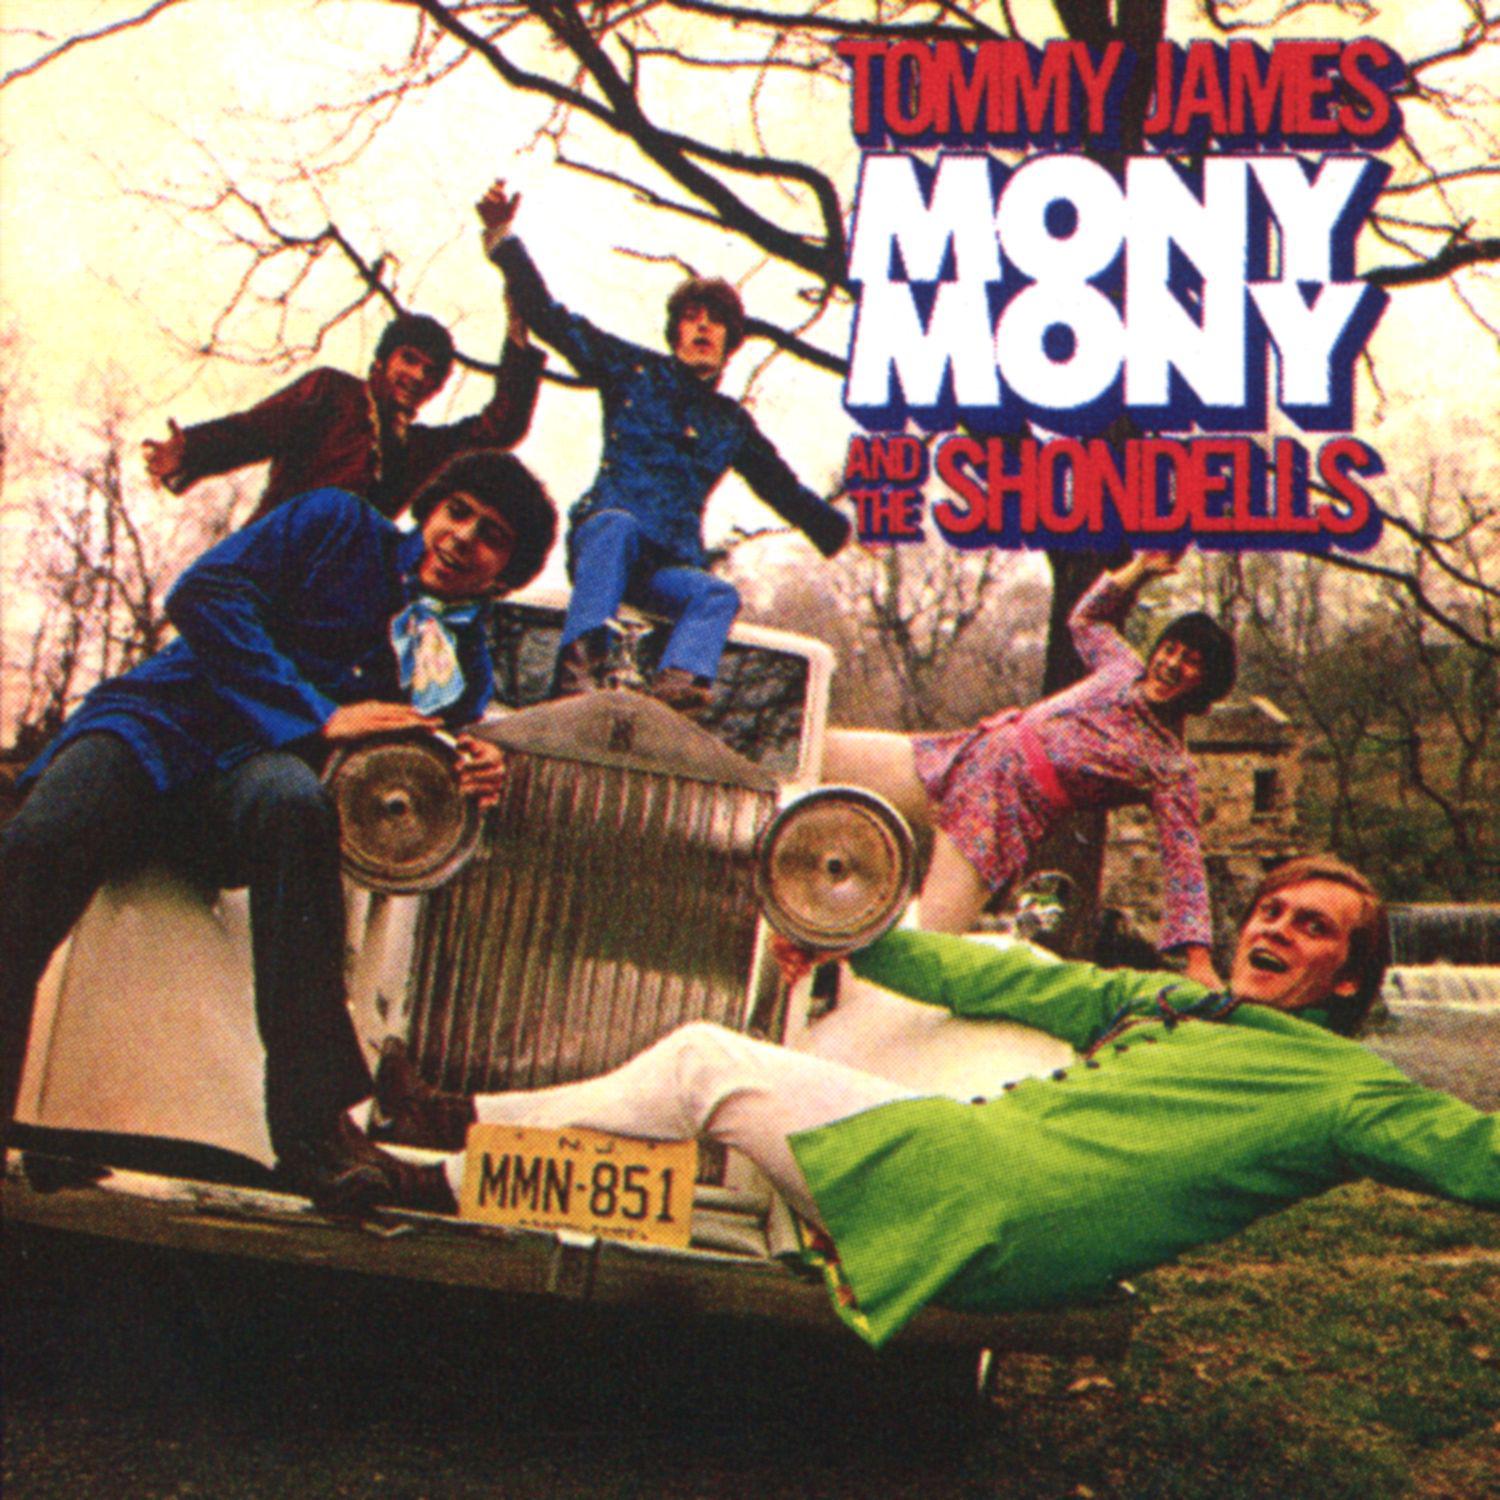 Tommy James & the Shondells - I Can't Go Back to Denver